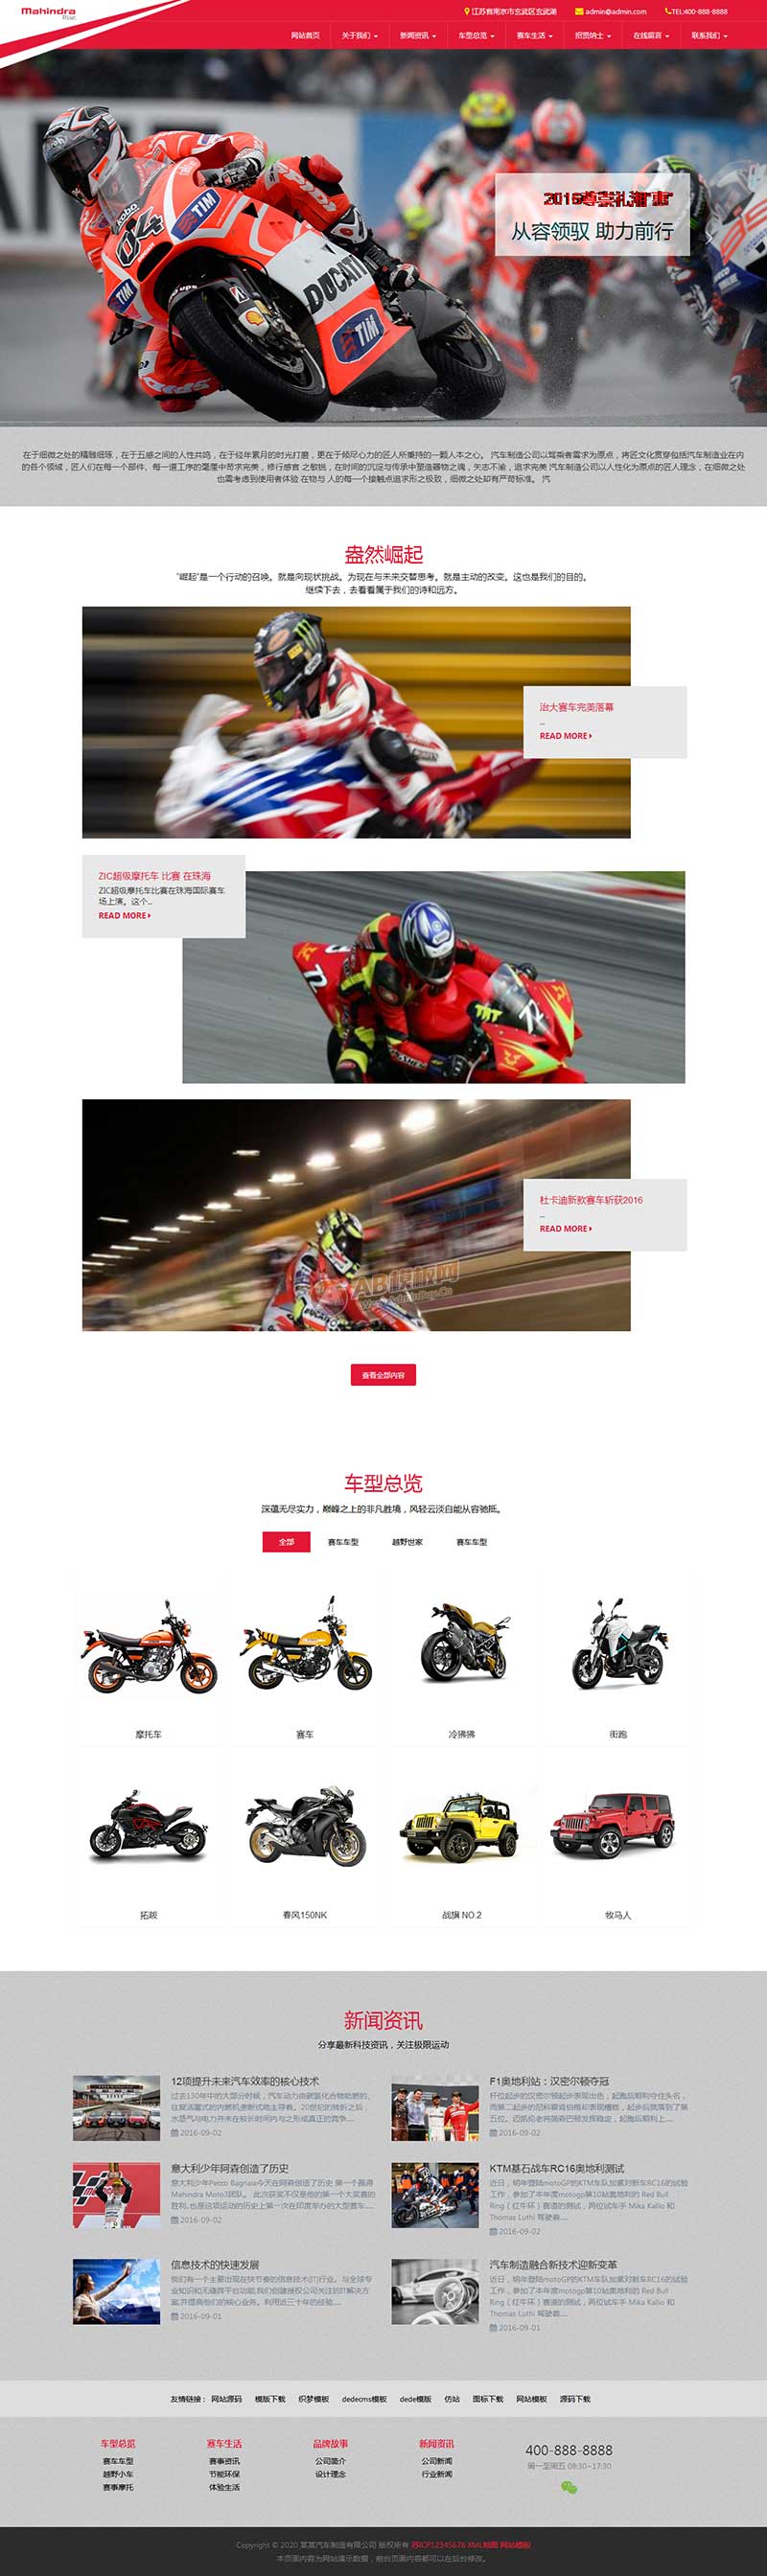 响应式汽车制造公司网站模板 HTML5大气高端红色摩托车网站源码